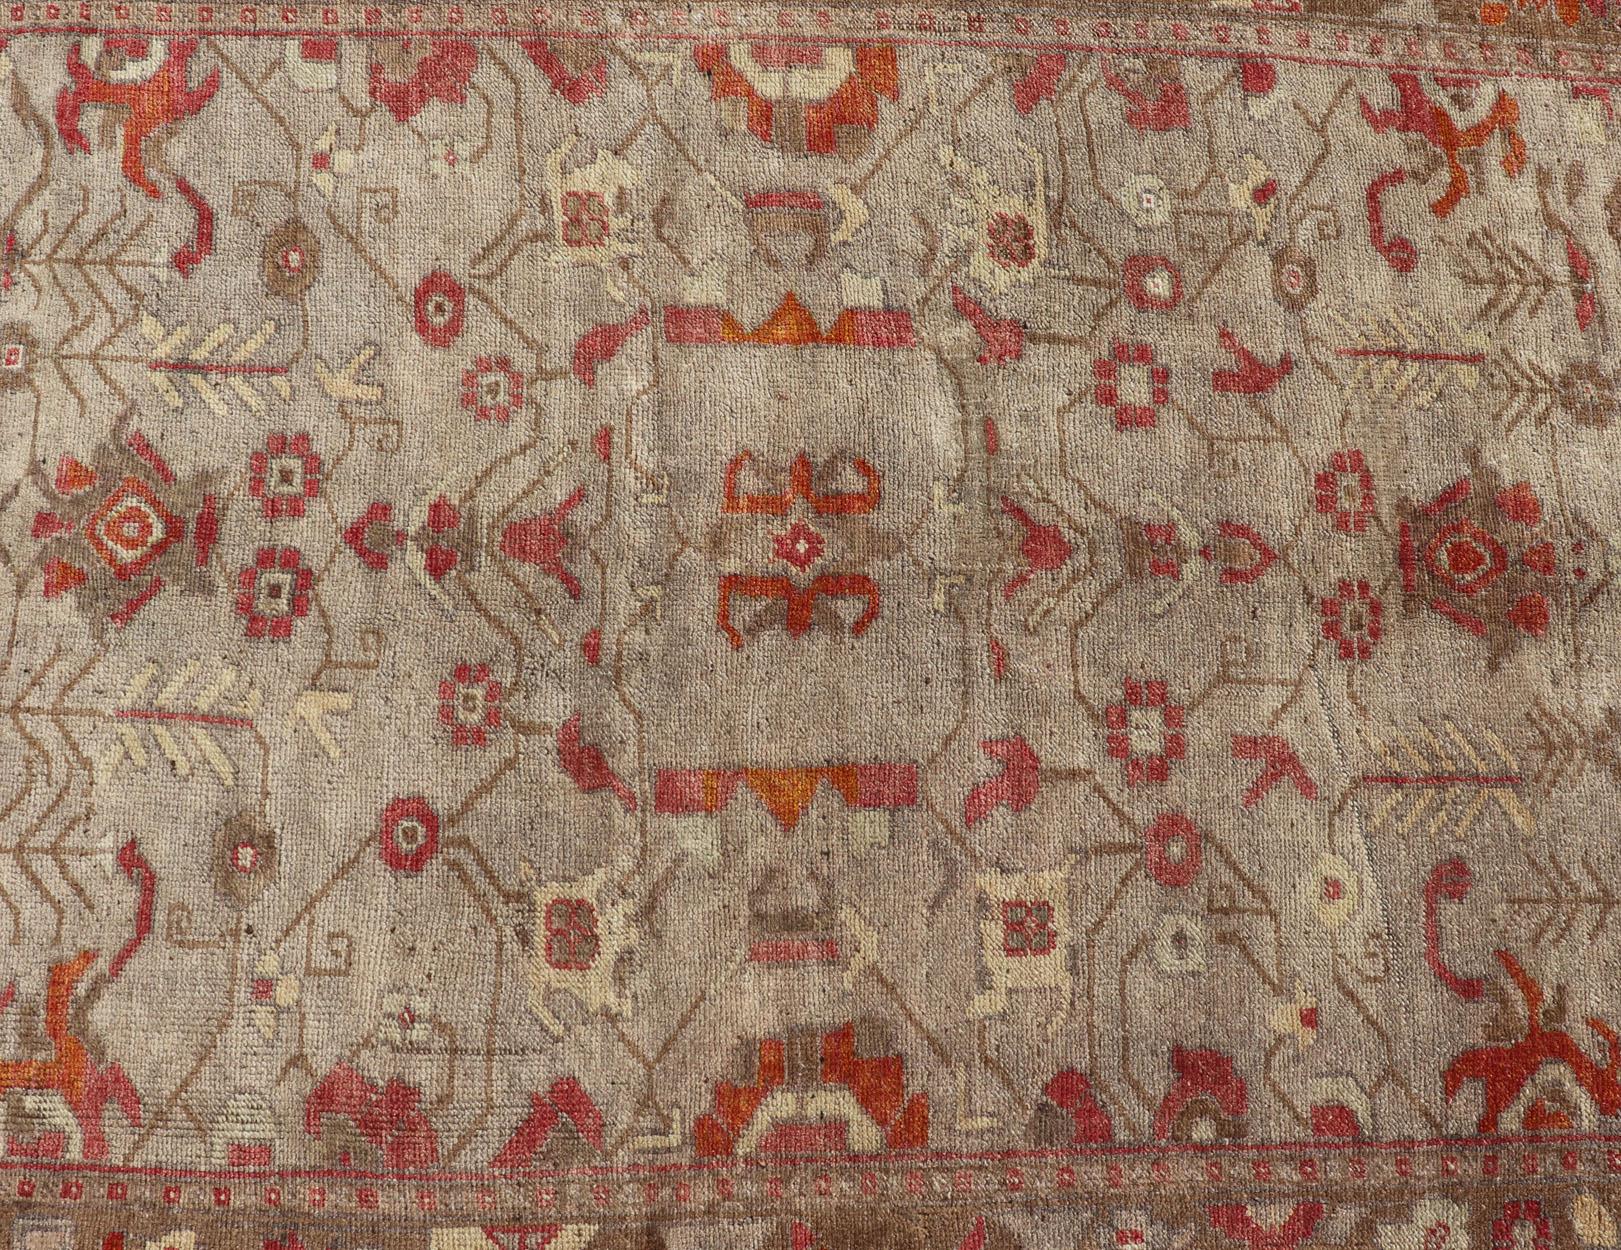 Quadratischer antiker türkischer Oushak-Teppich mit Blumenmuster in Grün, Rot, Taupe und Hellbraun 5